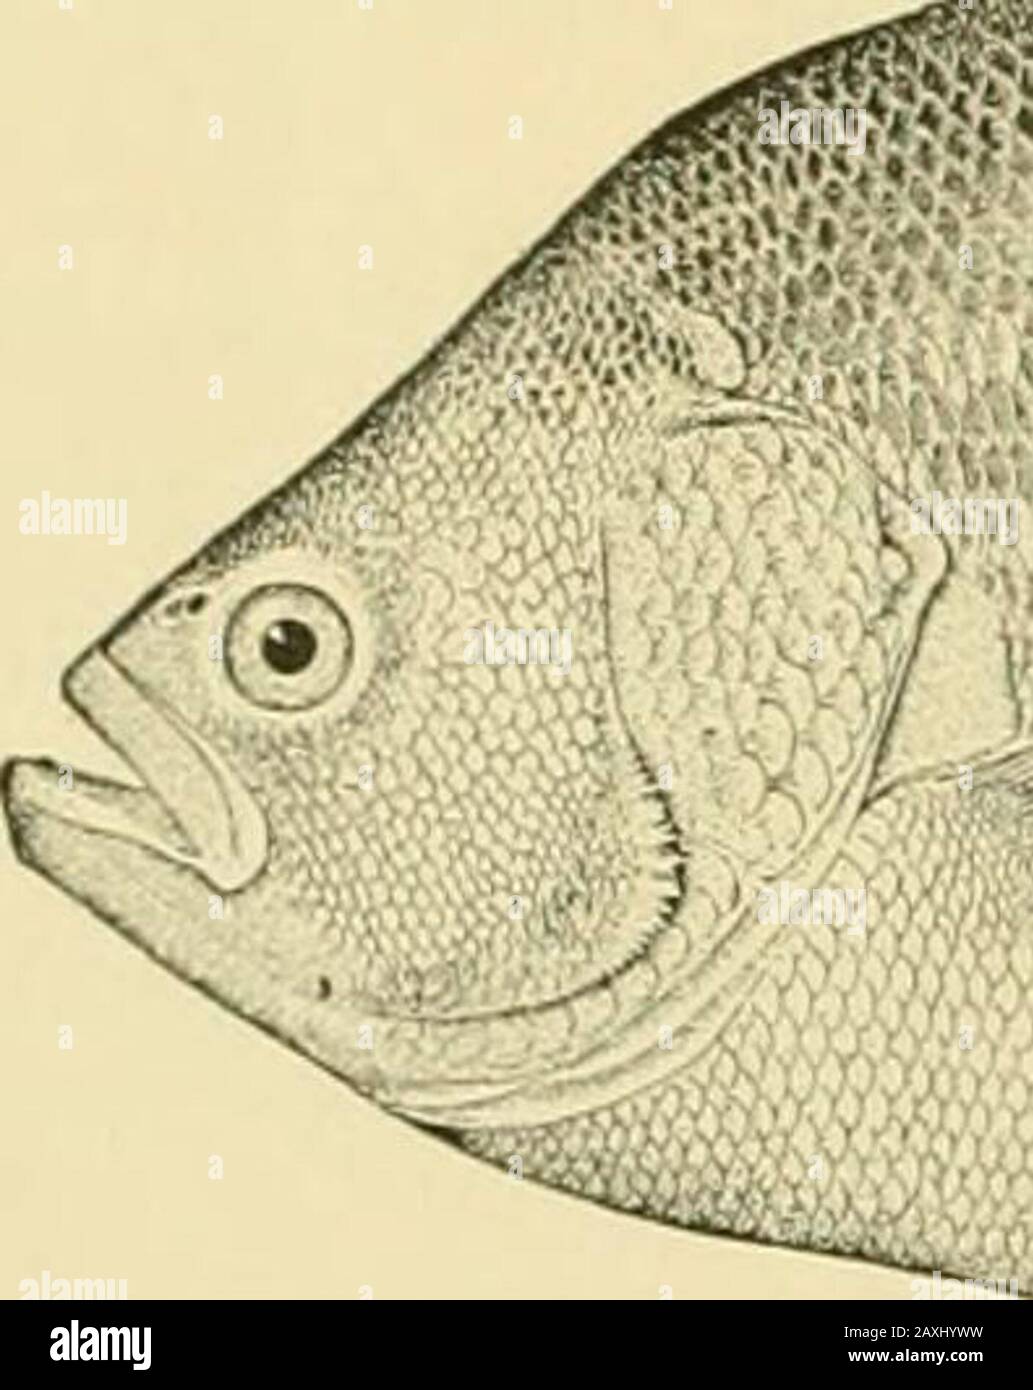 La nourriture et les poissons de jeu de New York: . ° ou 60Â° 1. À Woods Hole, Mass., ils sont déposés en juin. C'est un poisson de nourriture de valeur, atteignant une longueur de 18 pouces et le poids de 6 livres. 414 SKVKXTII RAPPORT OK TIIK L-ORKST, ITSH AM) COMMISSION OAMK. 115. Clignotant; triple queue (Lolotcs sKrinaiuciisis Bloch). Holocentrus SKriiiaiiciisis Bloch, Ichth., pi. 243, 1790, Surinam. Bodianiis triiinis .MircHiLl., Tran.s. Allumé. X : Pliil. SOC, I, 418, jil. Ill, fig. 10, 1815, Powles Hook, N. J. Lohotes auctorum Gunther, Cat Poisson. Brit. MUS., I, 338, 1859.Lolotes surinamensis Cuvier & Valenciennes, Hist. Banque D'Images